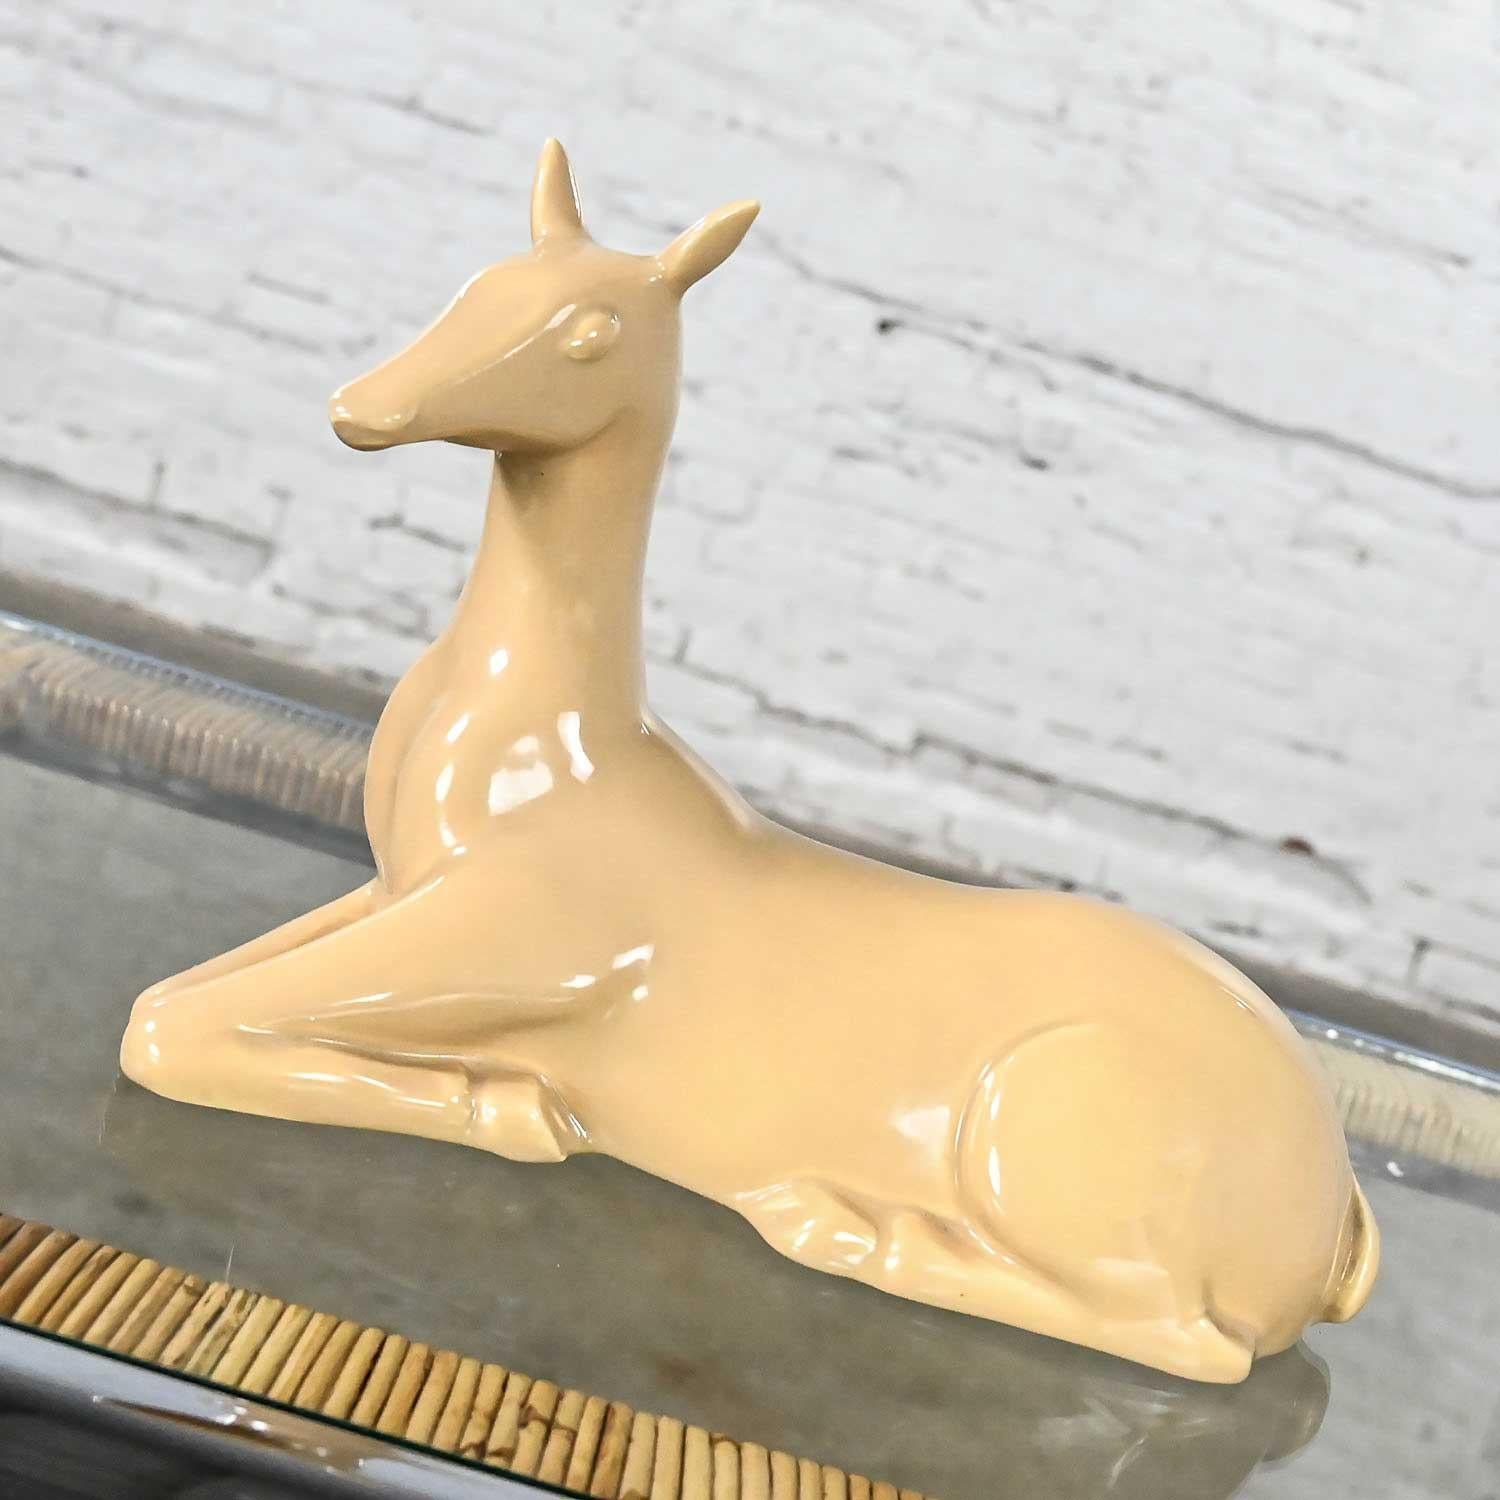 Vintage MCM to Modern Art Deco Revival Caramel Colored Ceramic Deer by Jaru 1975 1